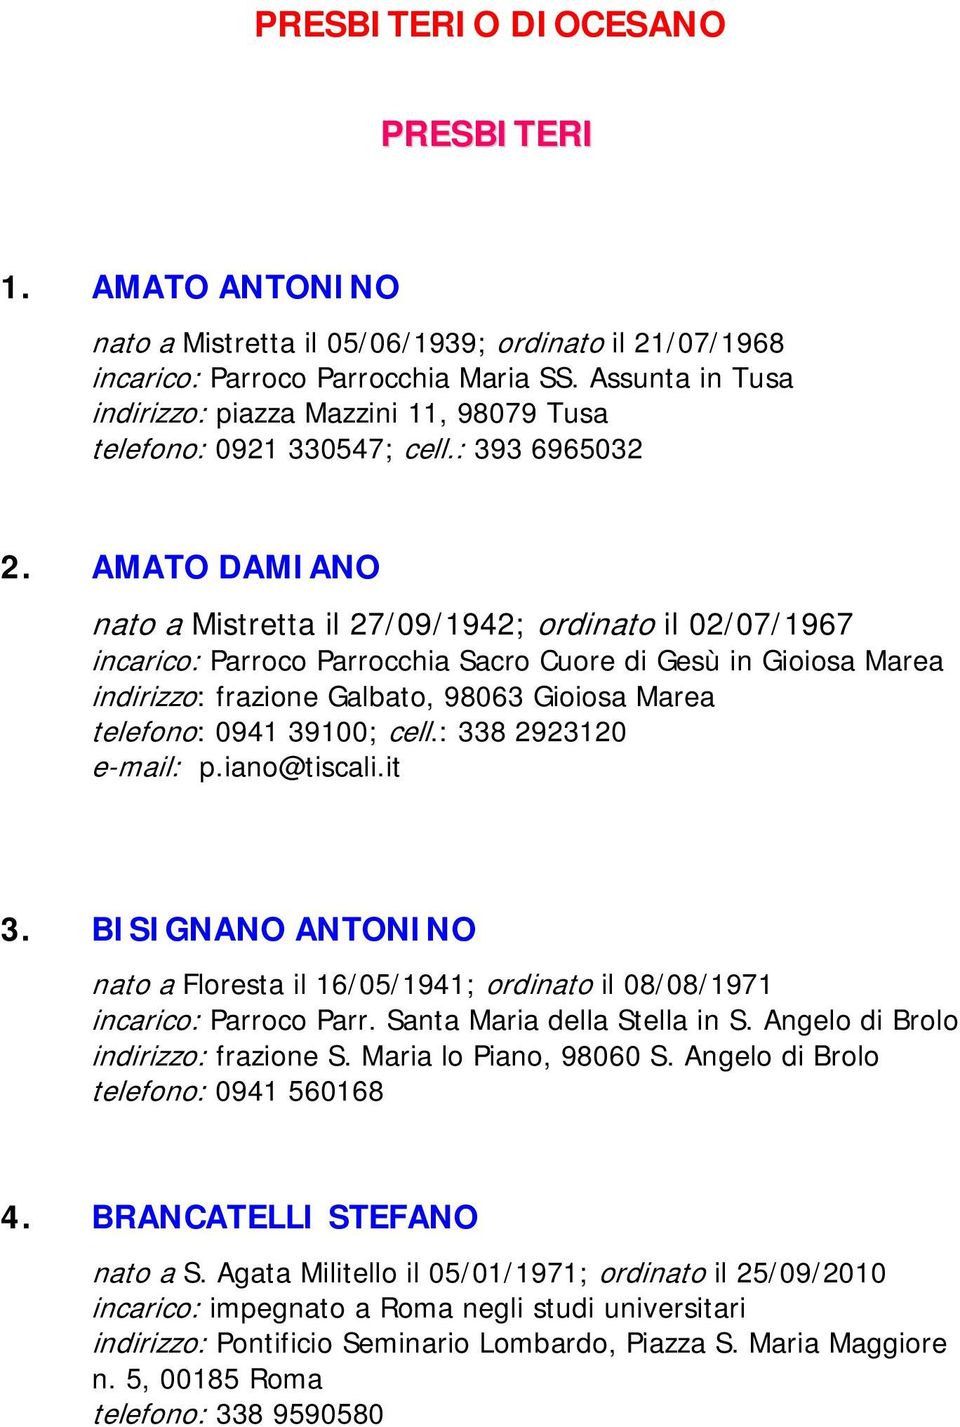 AMATO DAMIANO nato a Mistretta il 27/09/1942; ordinato il 02/07/1967 incarico: Parroco Parrocchia Sacro Cuore di Gesù in Gioiosa Marea indirizzo: frazione Galbato, 98063 Gioiosa Marea telefono: 0941